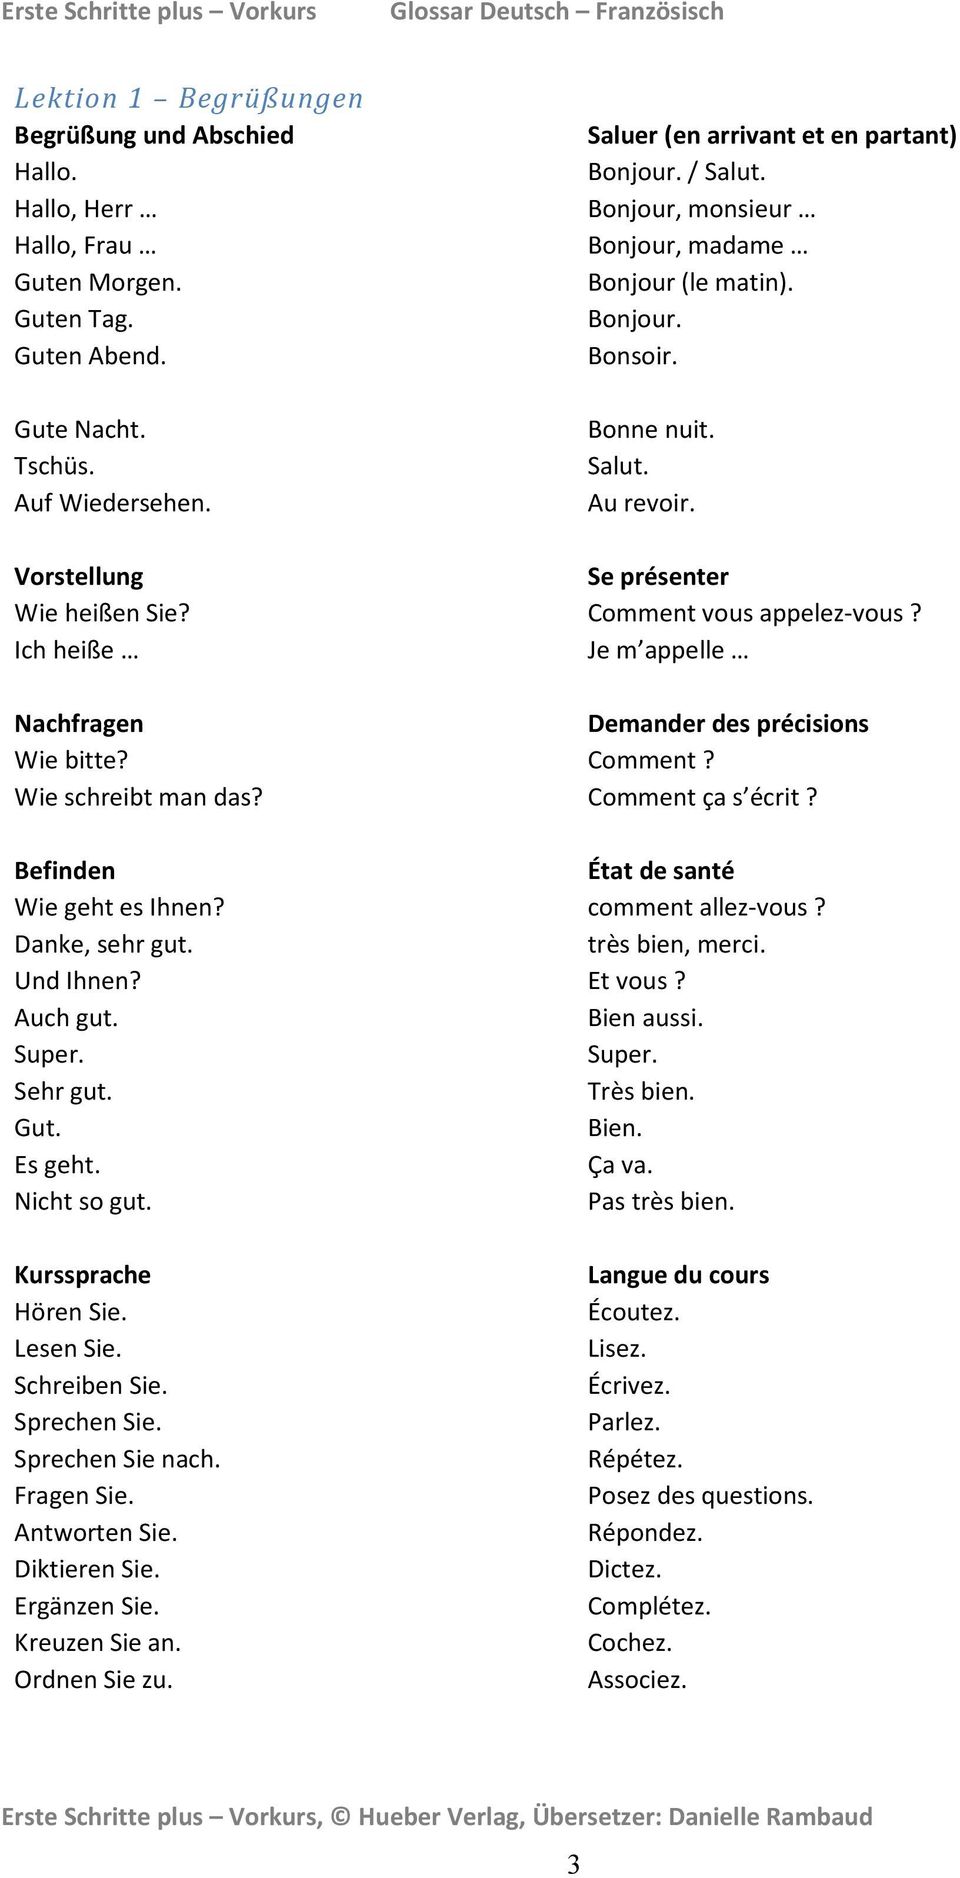 Bekanntschaft machen – Übersetzung ins Französische - aus dem Deutschen | healthraport.de Übersetzer